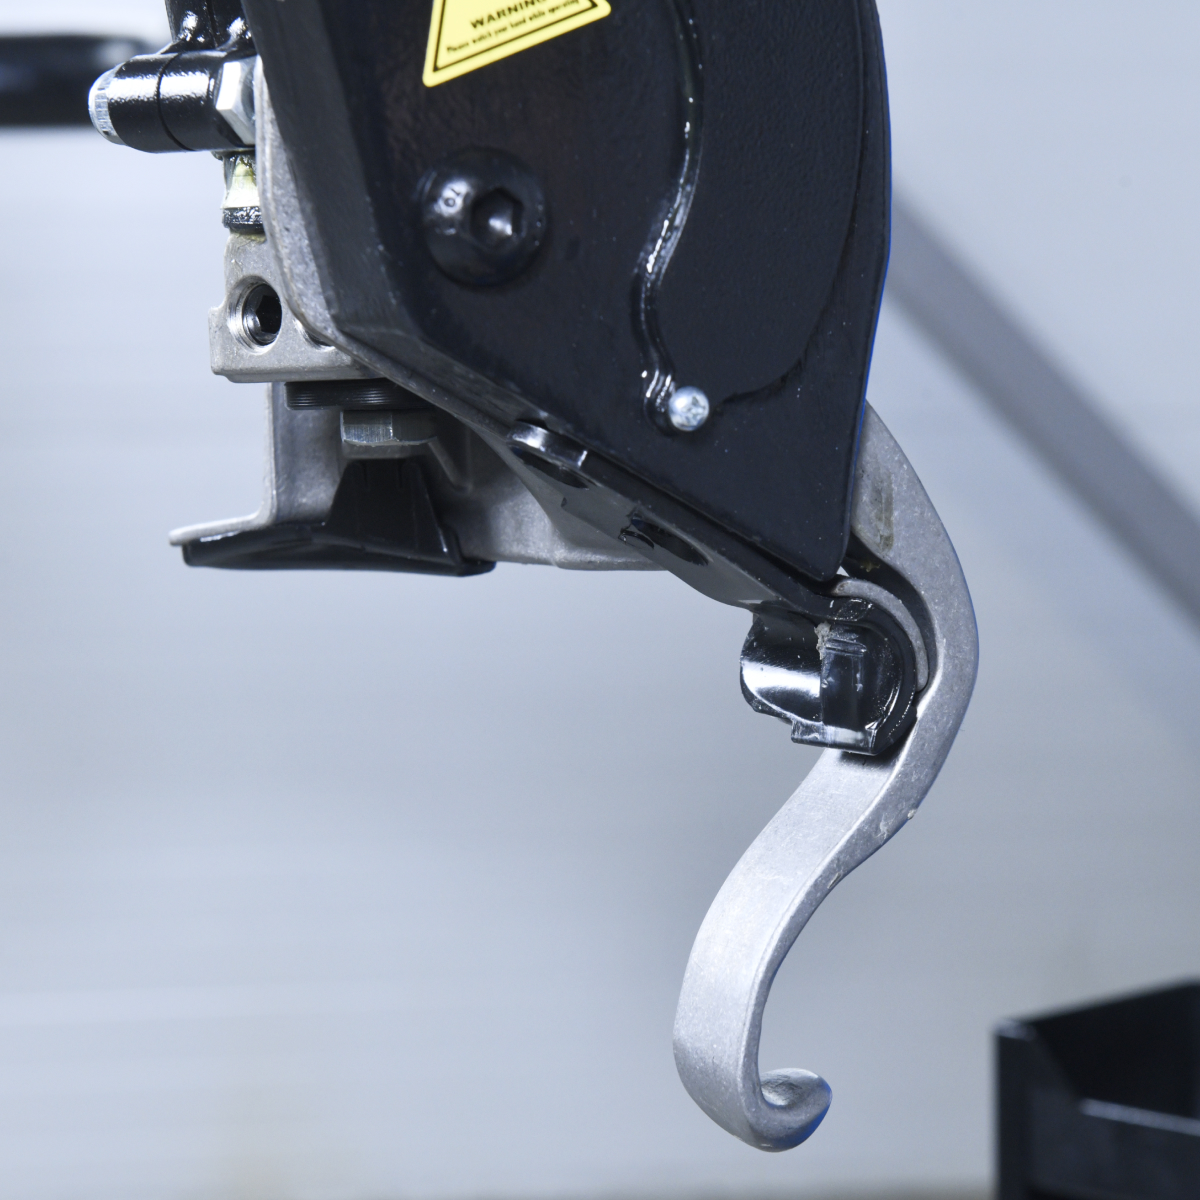 Вспомогательное устройство для работы с шиной без использования монтировки входит в стандартную комплектацию